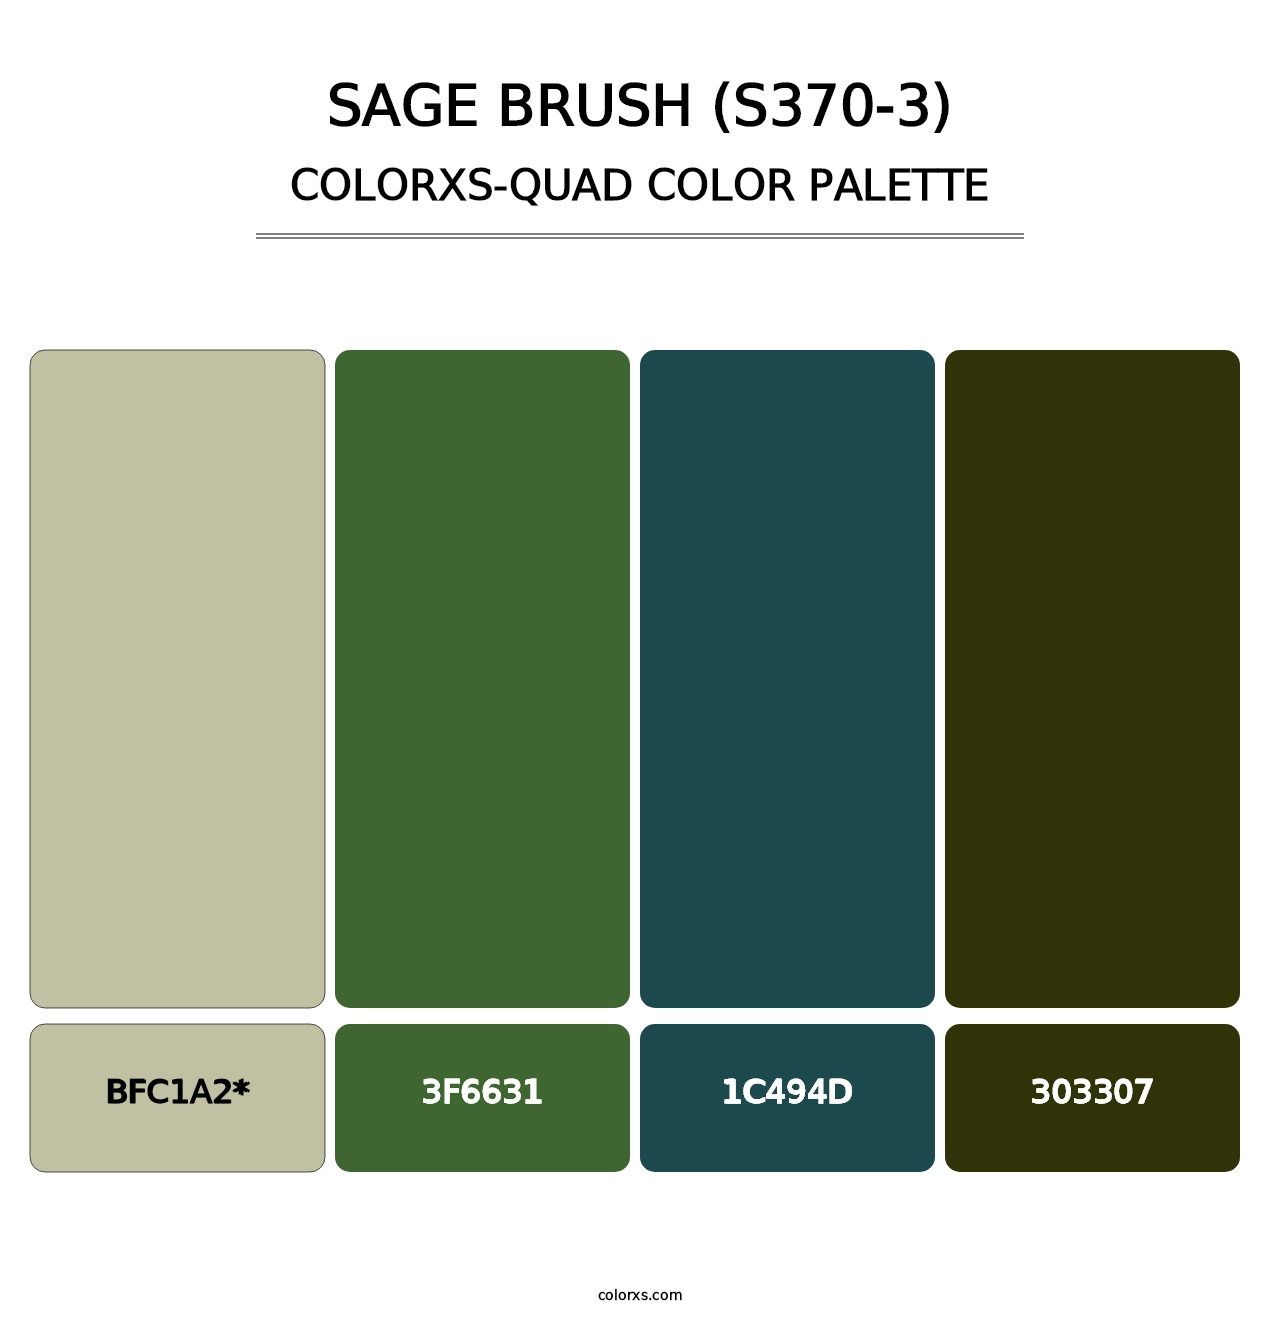 Sage Brush (S370-3) - Colorxs Quad Palette